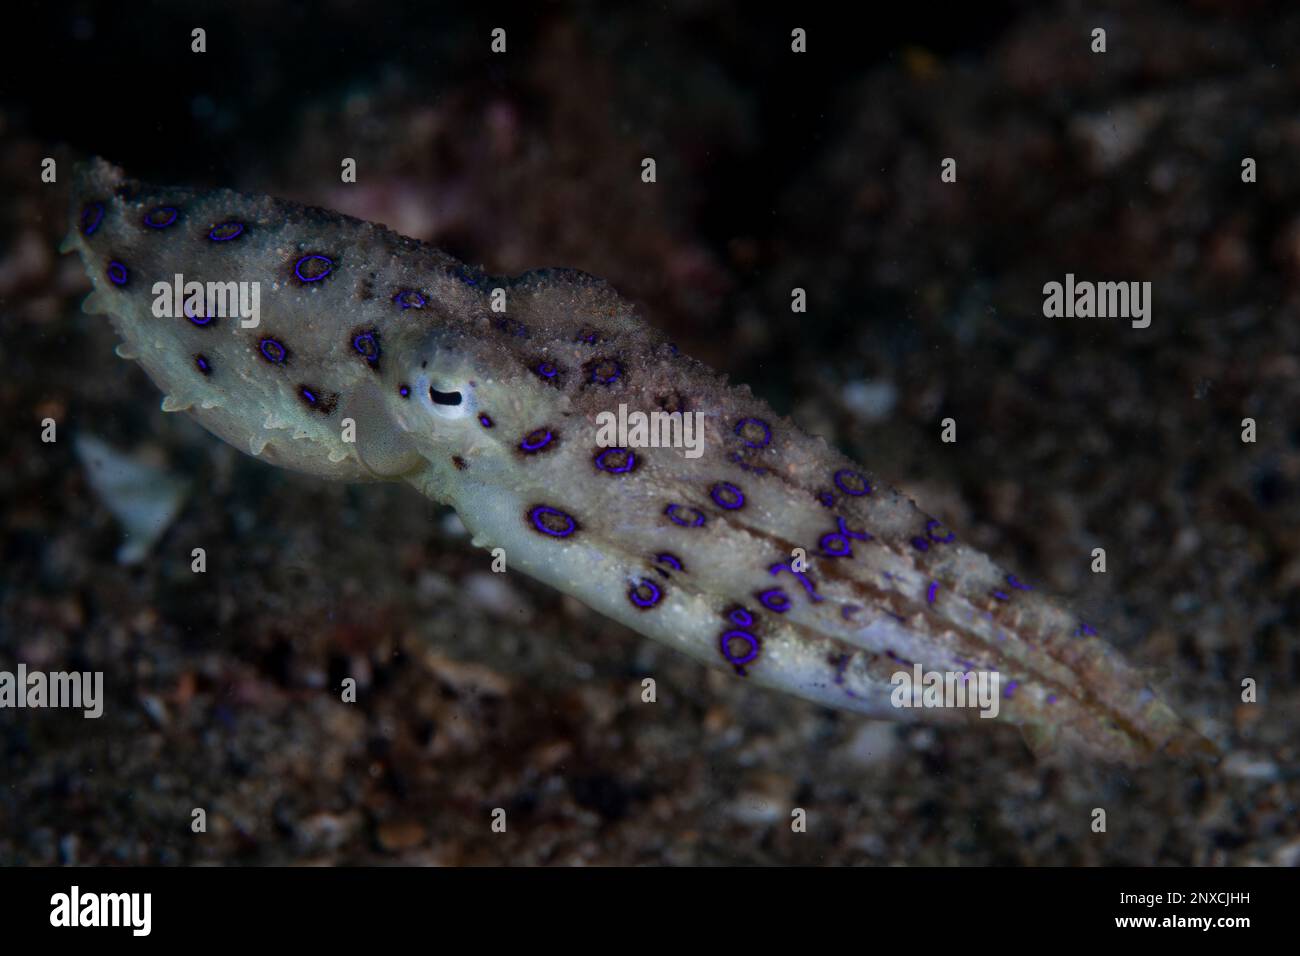 Ein blauer Ring-Oktopus kriecht auf dem Meeresboden eines Riffs in Lembrits, Indonesien. Dieser kleine, schöne Kopffüßer hat eines der wirksamsten Gifte, die bekannt sind. Stockfoto